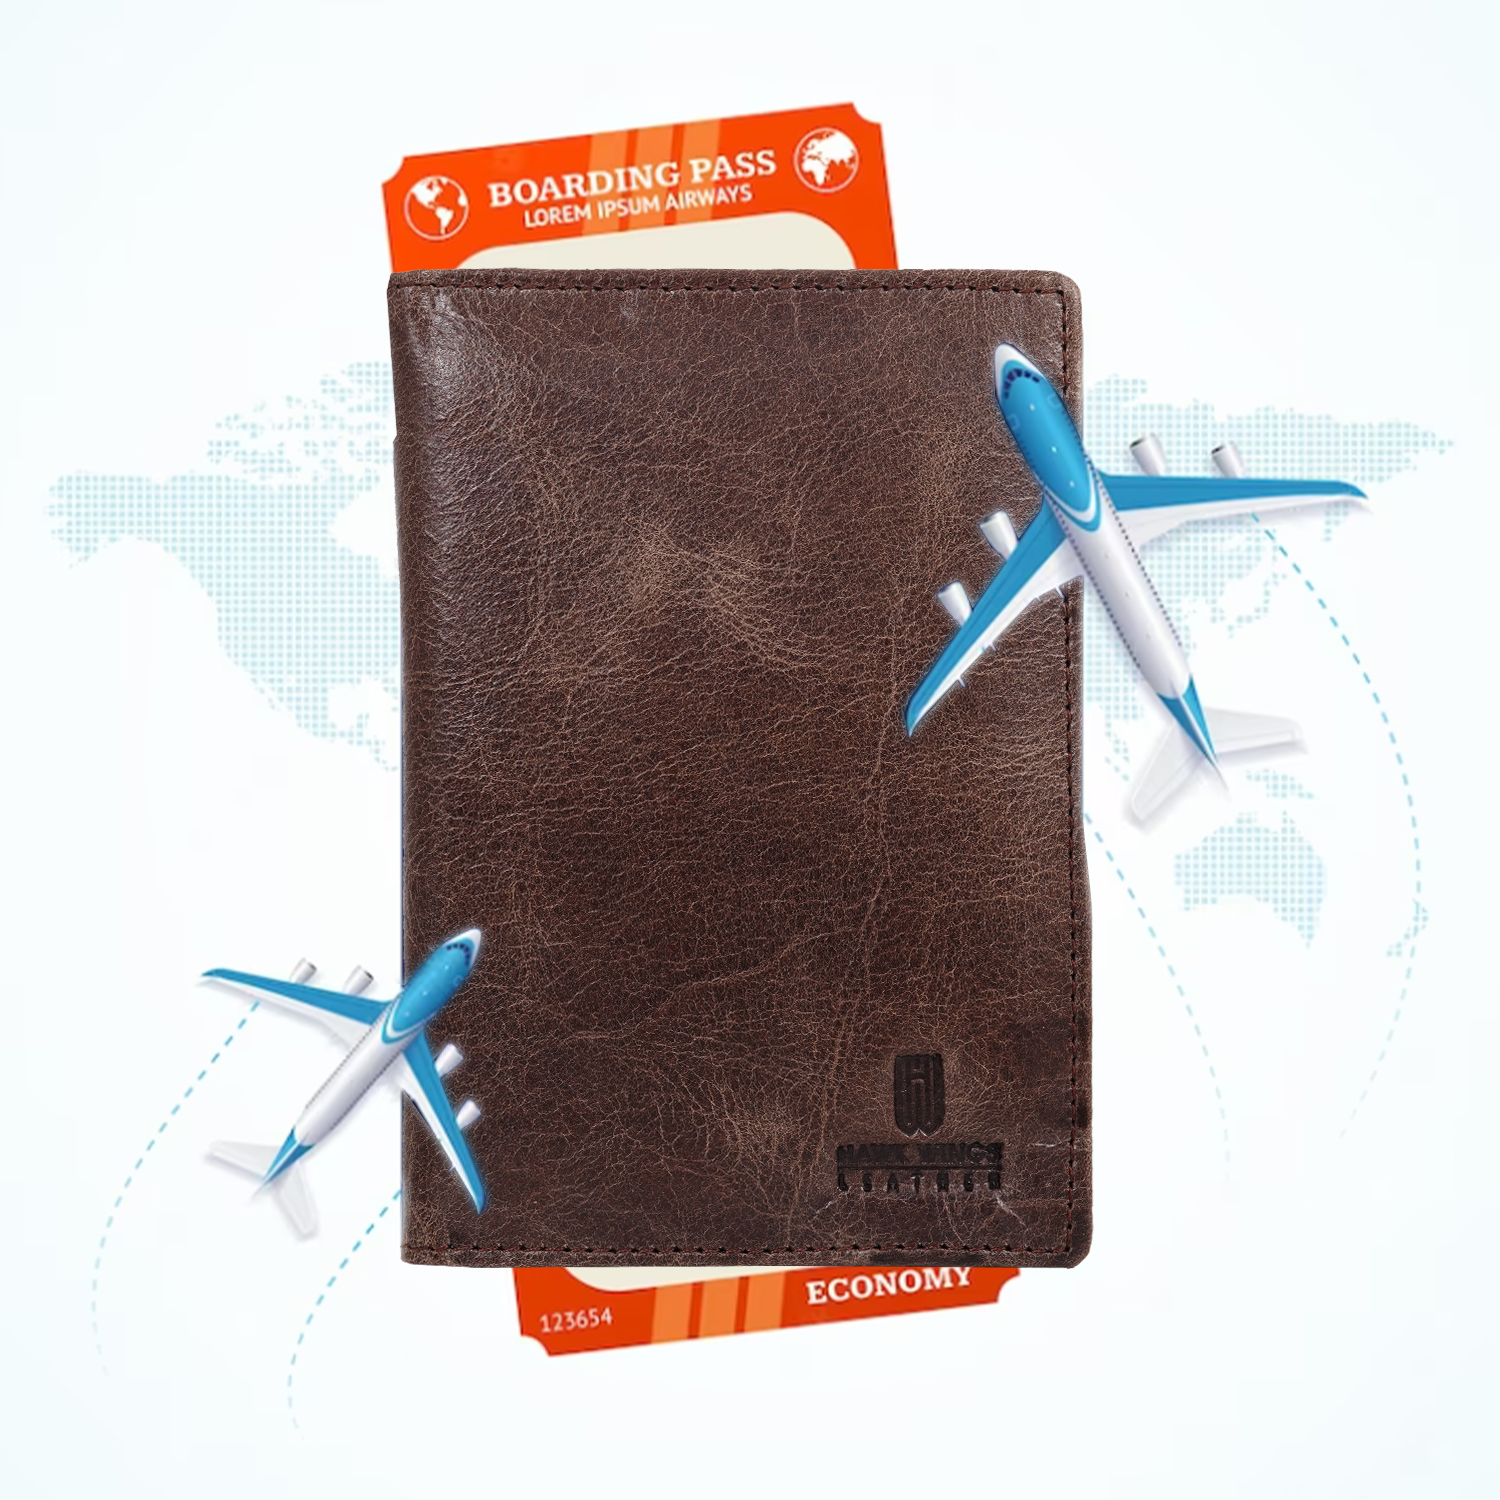 Genuine Leather  Card Holder||Travel Passport Holder||Travel Document Holder||Passport Cover For Men&Women ( BROWN)